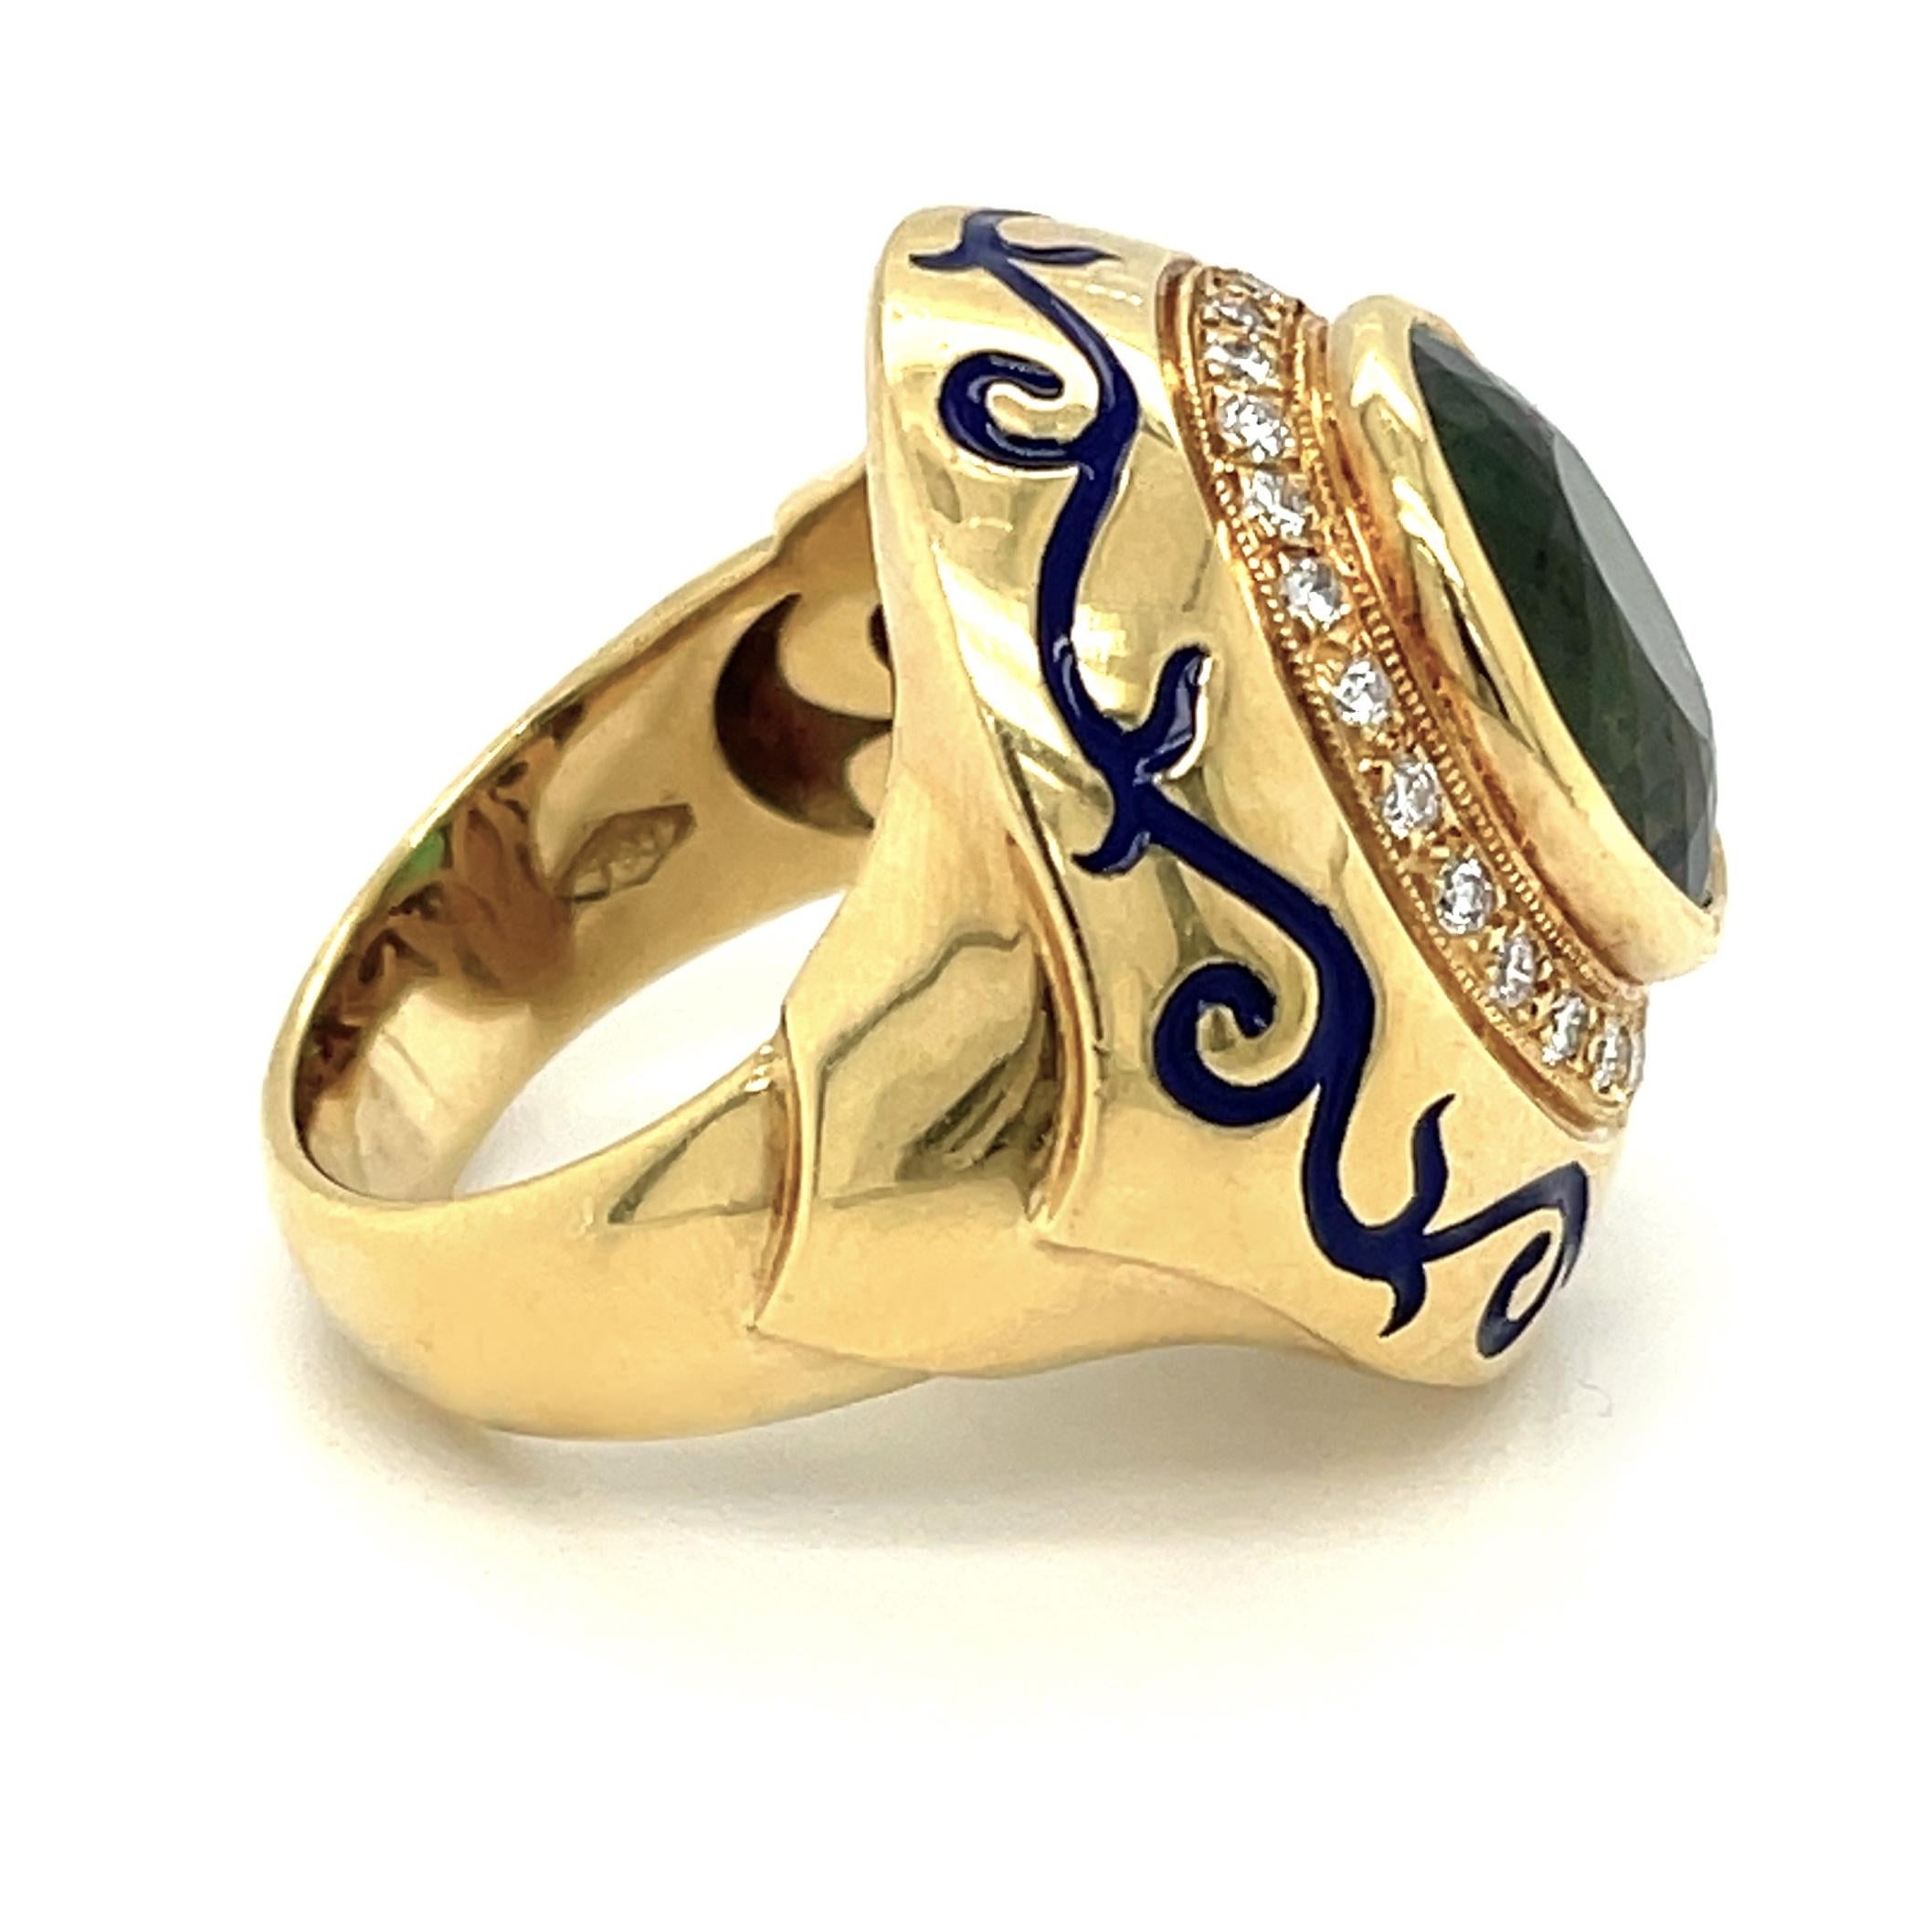 Dieser beeindruckende Ring zeigt einen spektakulären 7,88 Karat großen, facettierten grünen Turmalin mit herrlicher Farbe und Brillanz! Der zentrale Edelstein ist ein wunderschönes hellgrünes Oval mit bläulich-grünen und gelblich-grünen Reflexen,